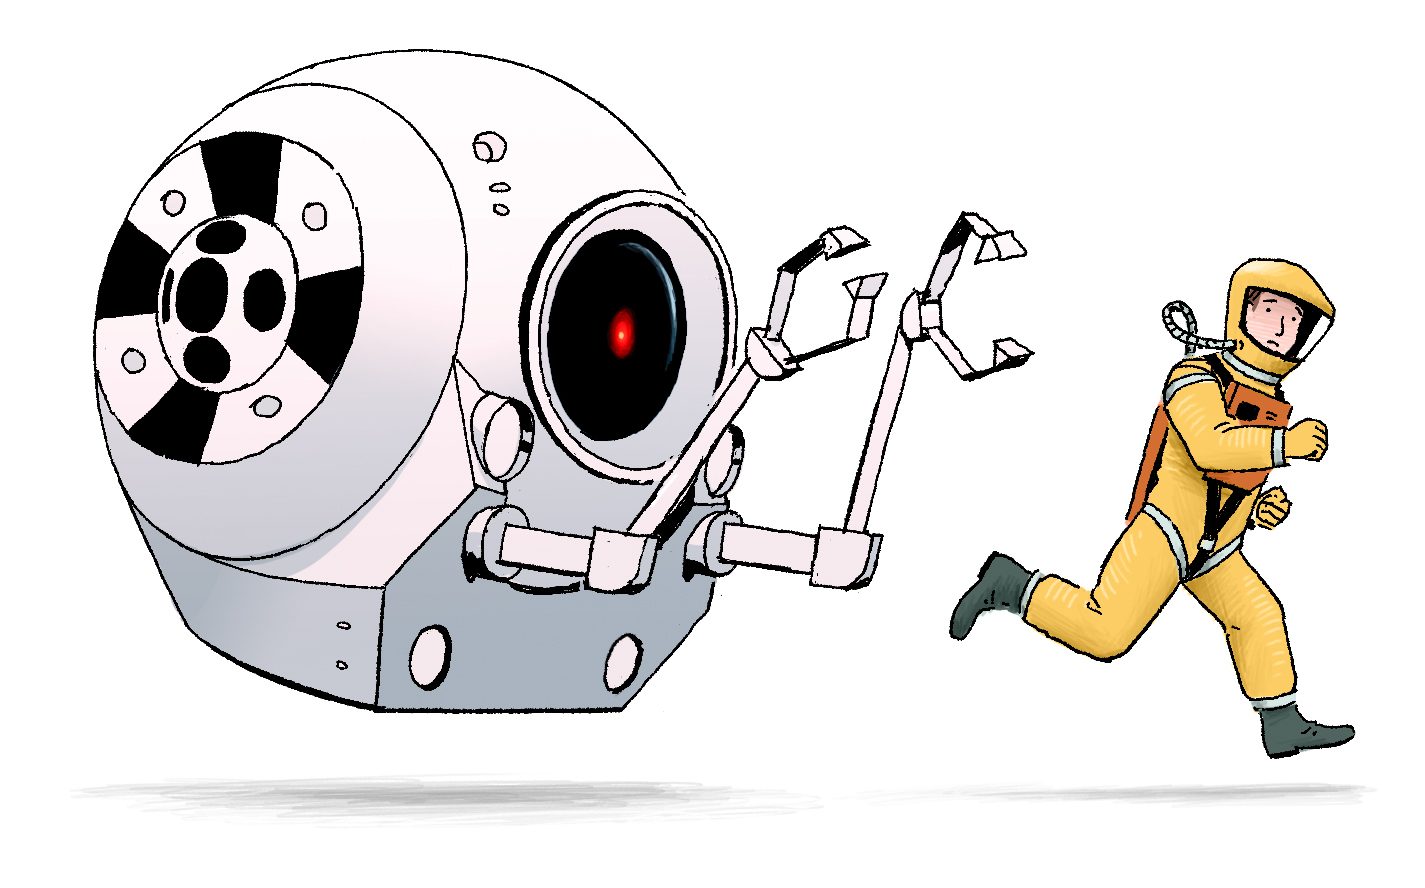 Robot chasing human